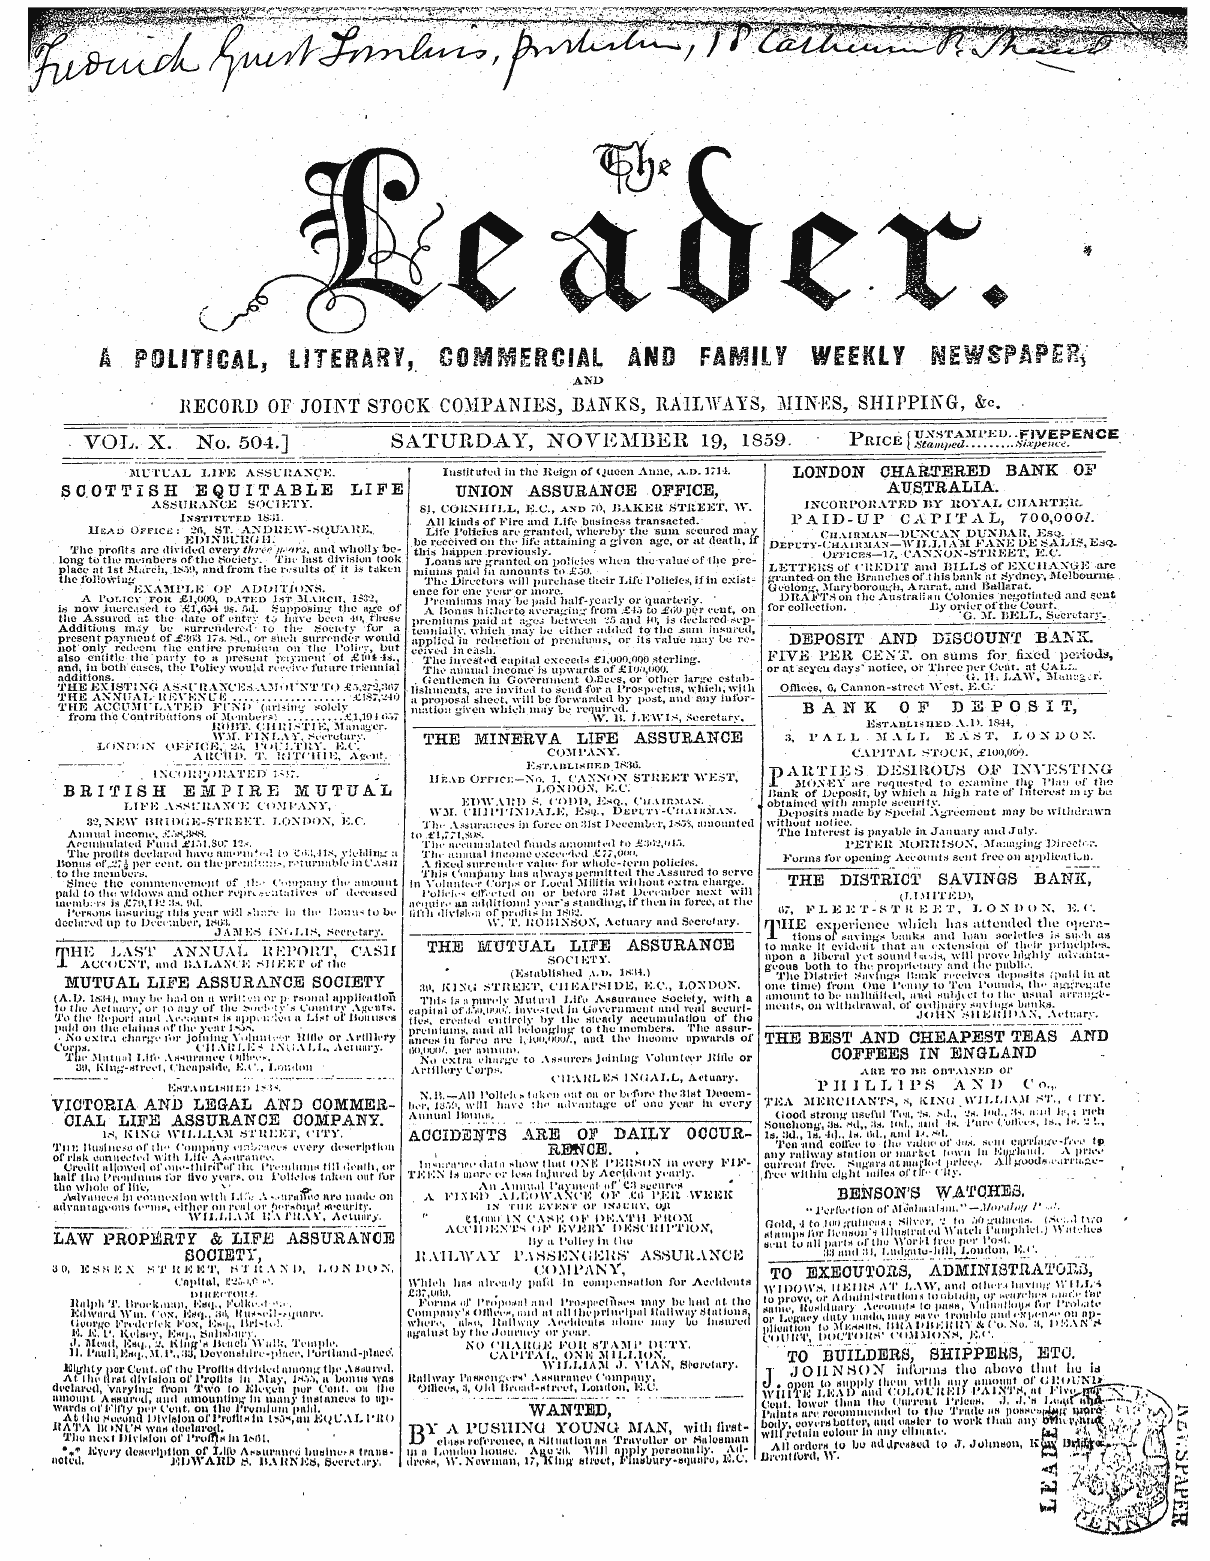 Leader (1850-1860): jS F Y, 2nd edition - " .'Ku . .. , At Flvi^Nr^X 7 ,\ W. » Lau...